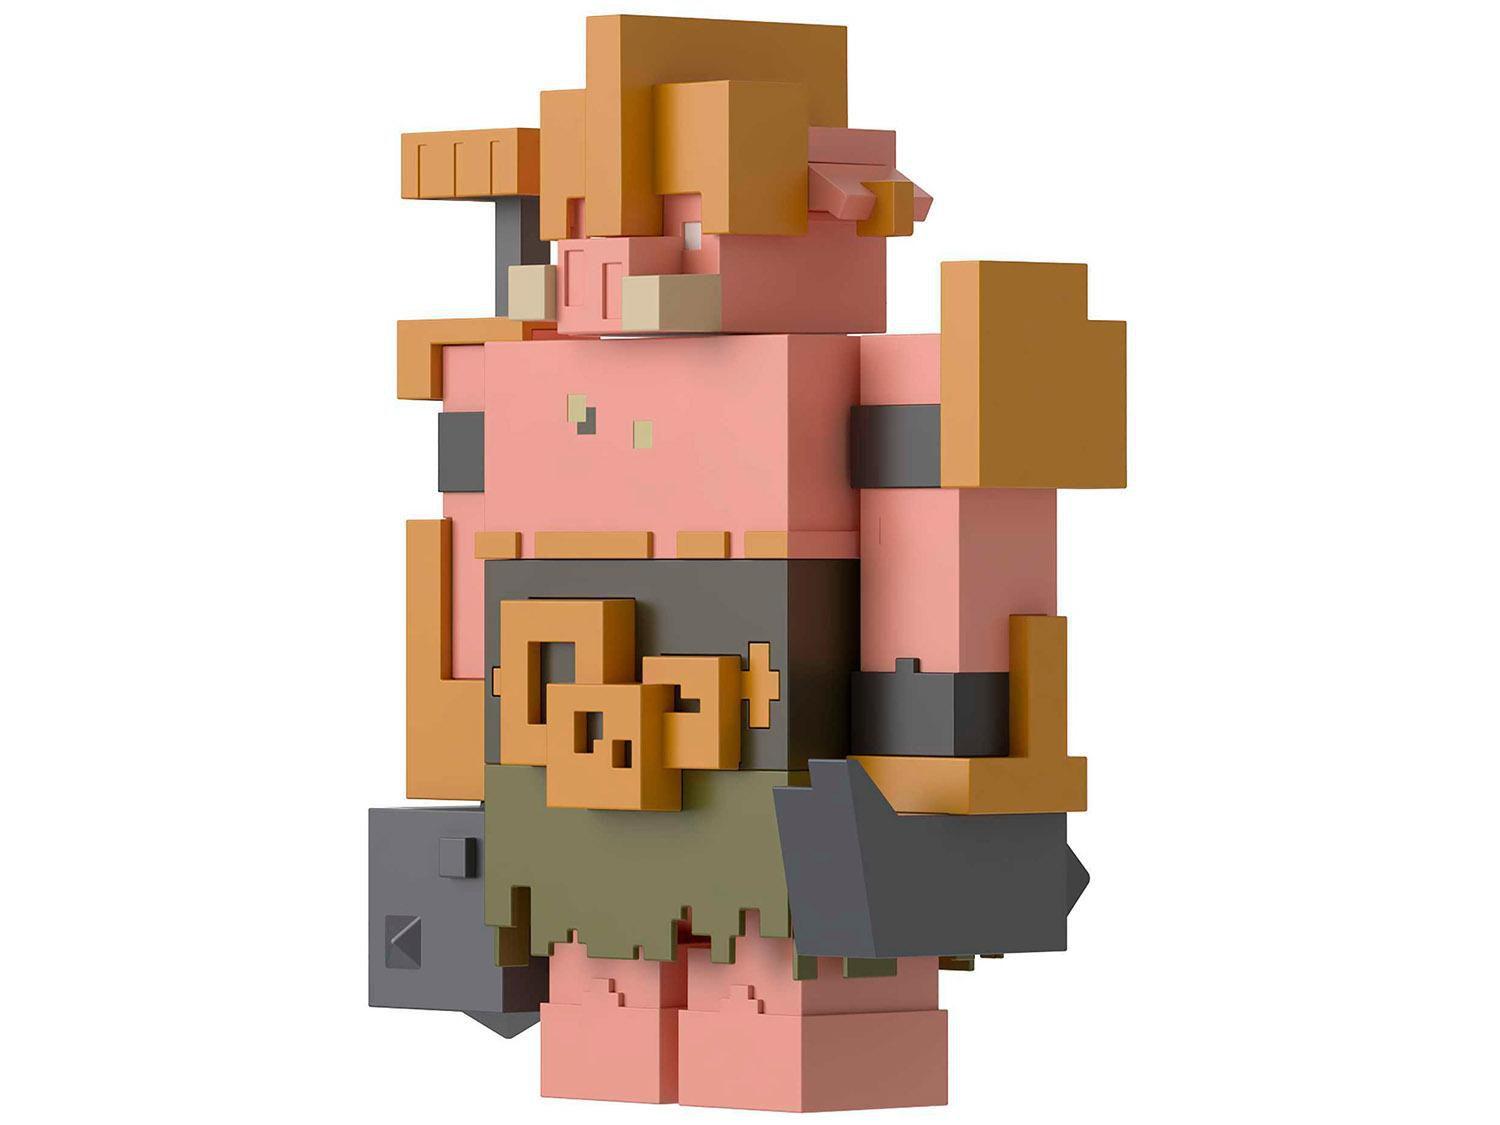 Boneco Minecraft